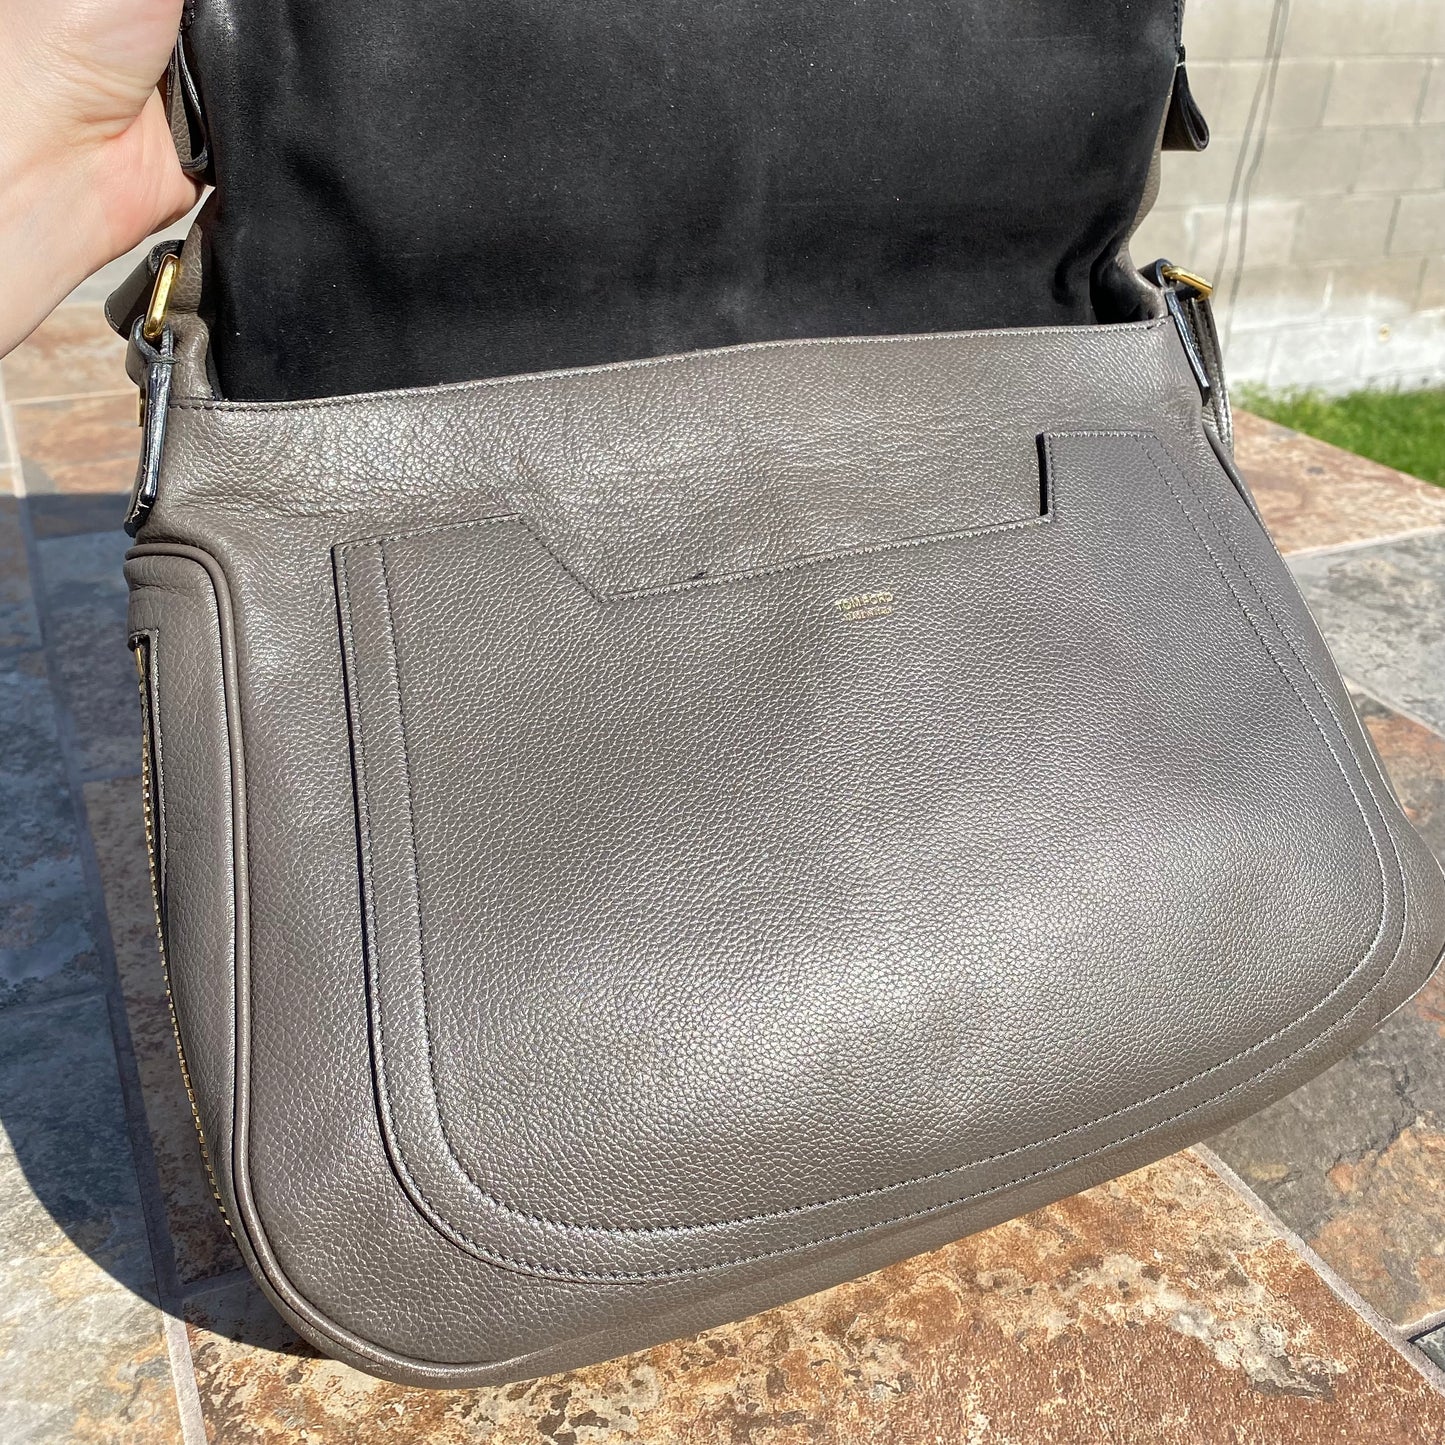 Tom Ford Grained Leather Jennifer Saddle Bag